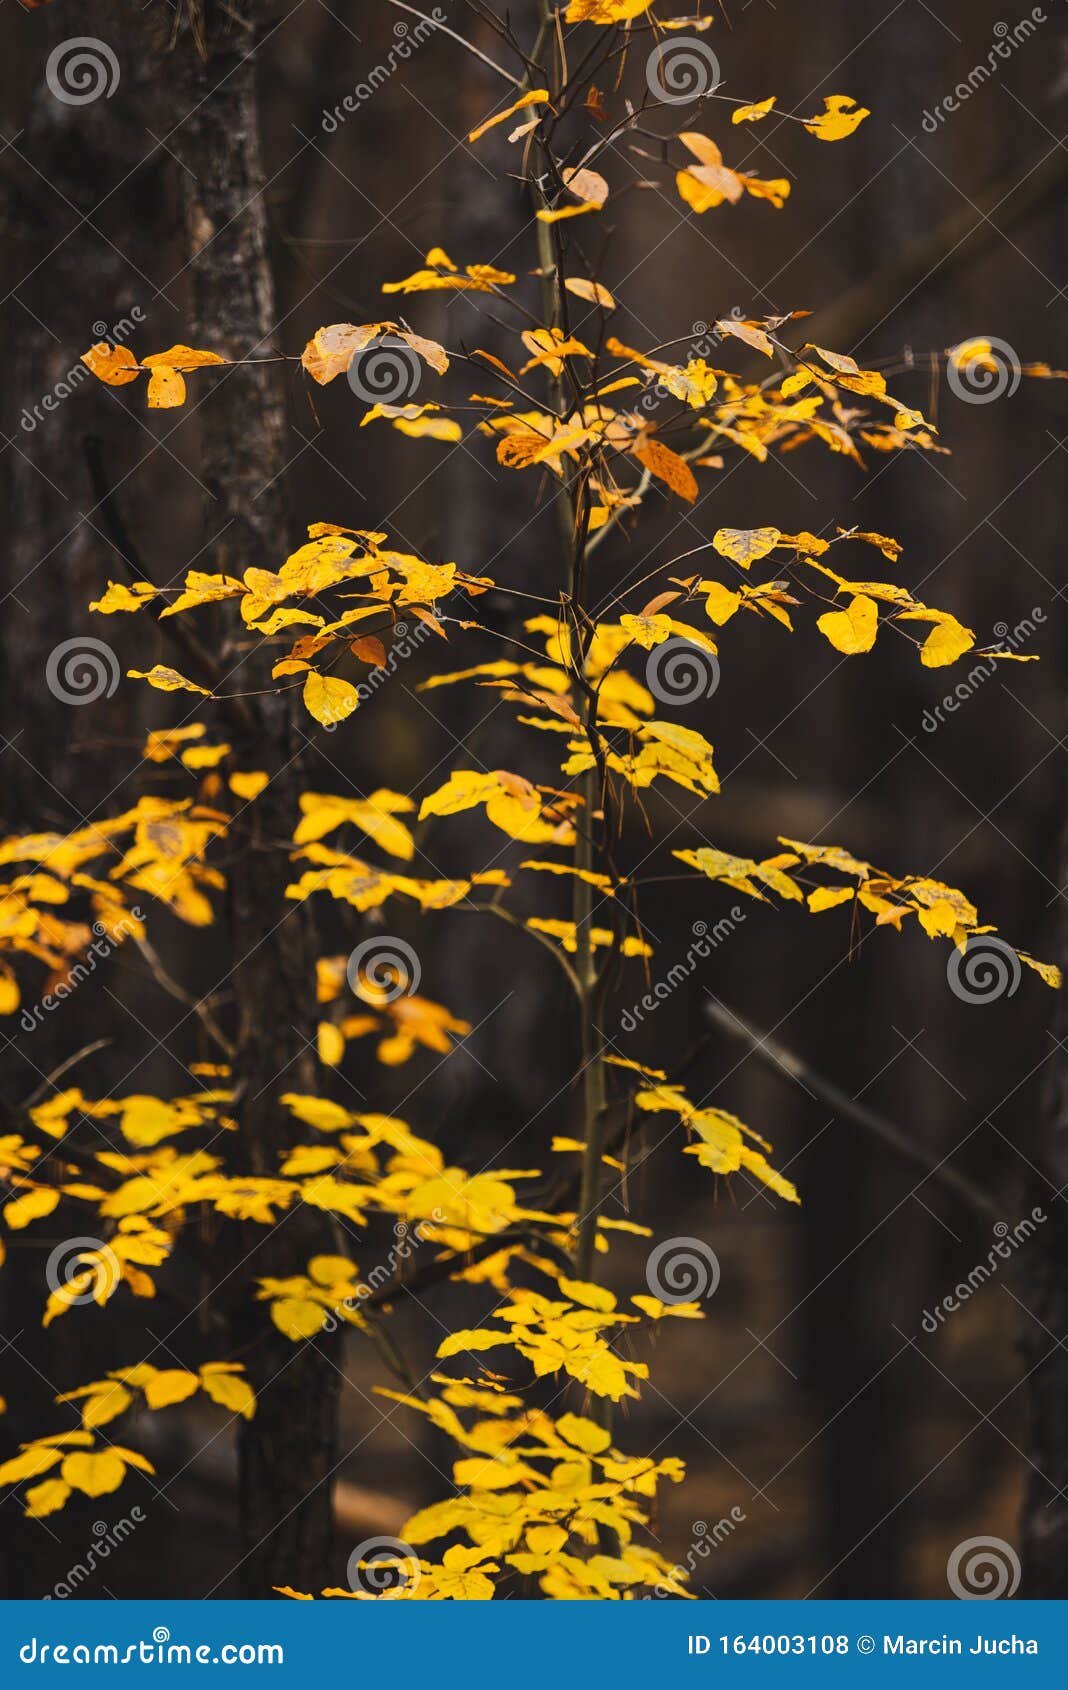 Những cánh lá vàng rực rỡ trên bức ảnh này sẽ khiến bạn muốn tìm hiểu thêm về nguồn gốc và câu chuyện đằng sau chúng.